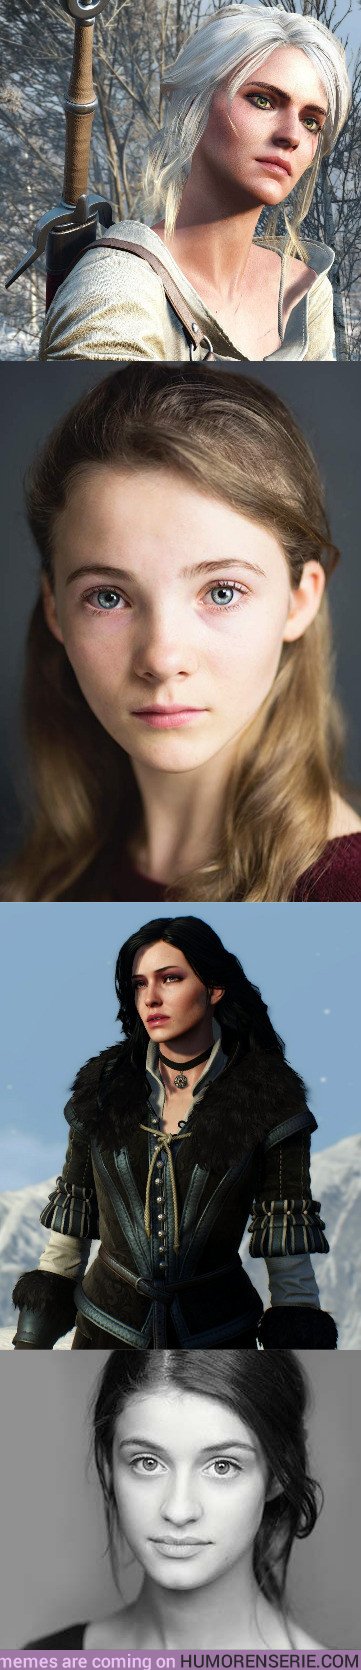 29864 - Freya Allan y Anya Chalotra serán Ciri y Yennefer en la serie de The Witcher